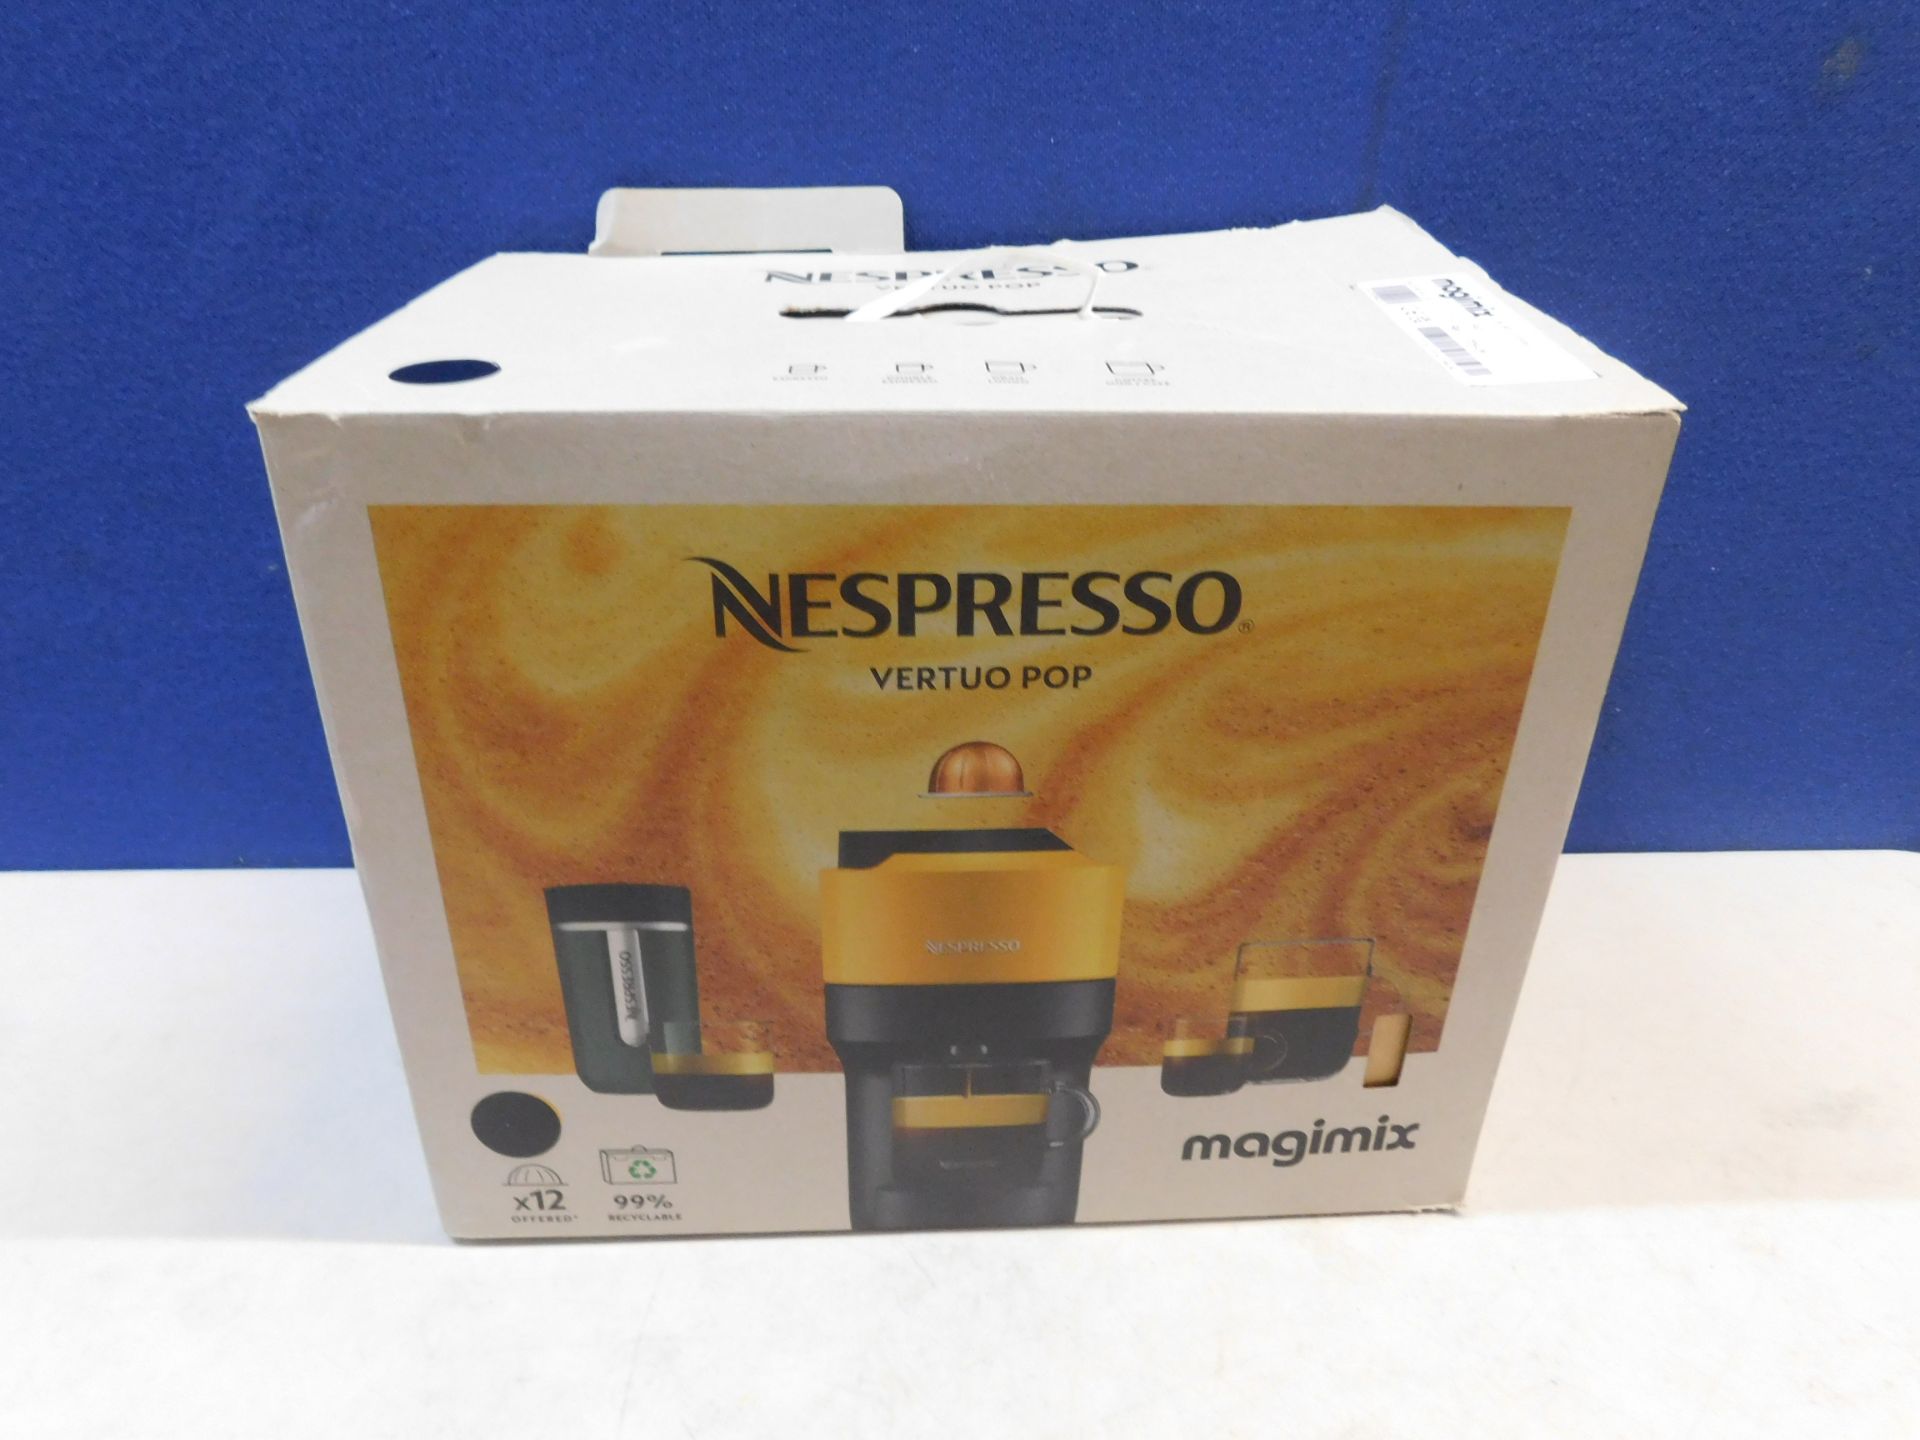 1 BOXED NESPRESSO VERTUO POP COFFEE POD MACHINE RRP Â£99.99